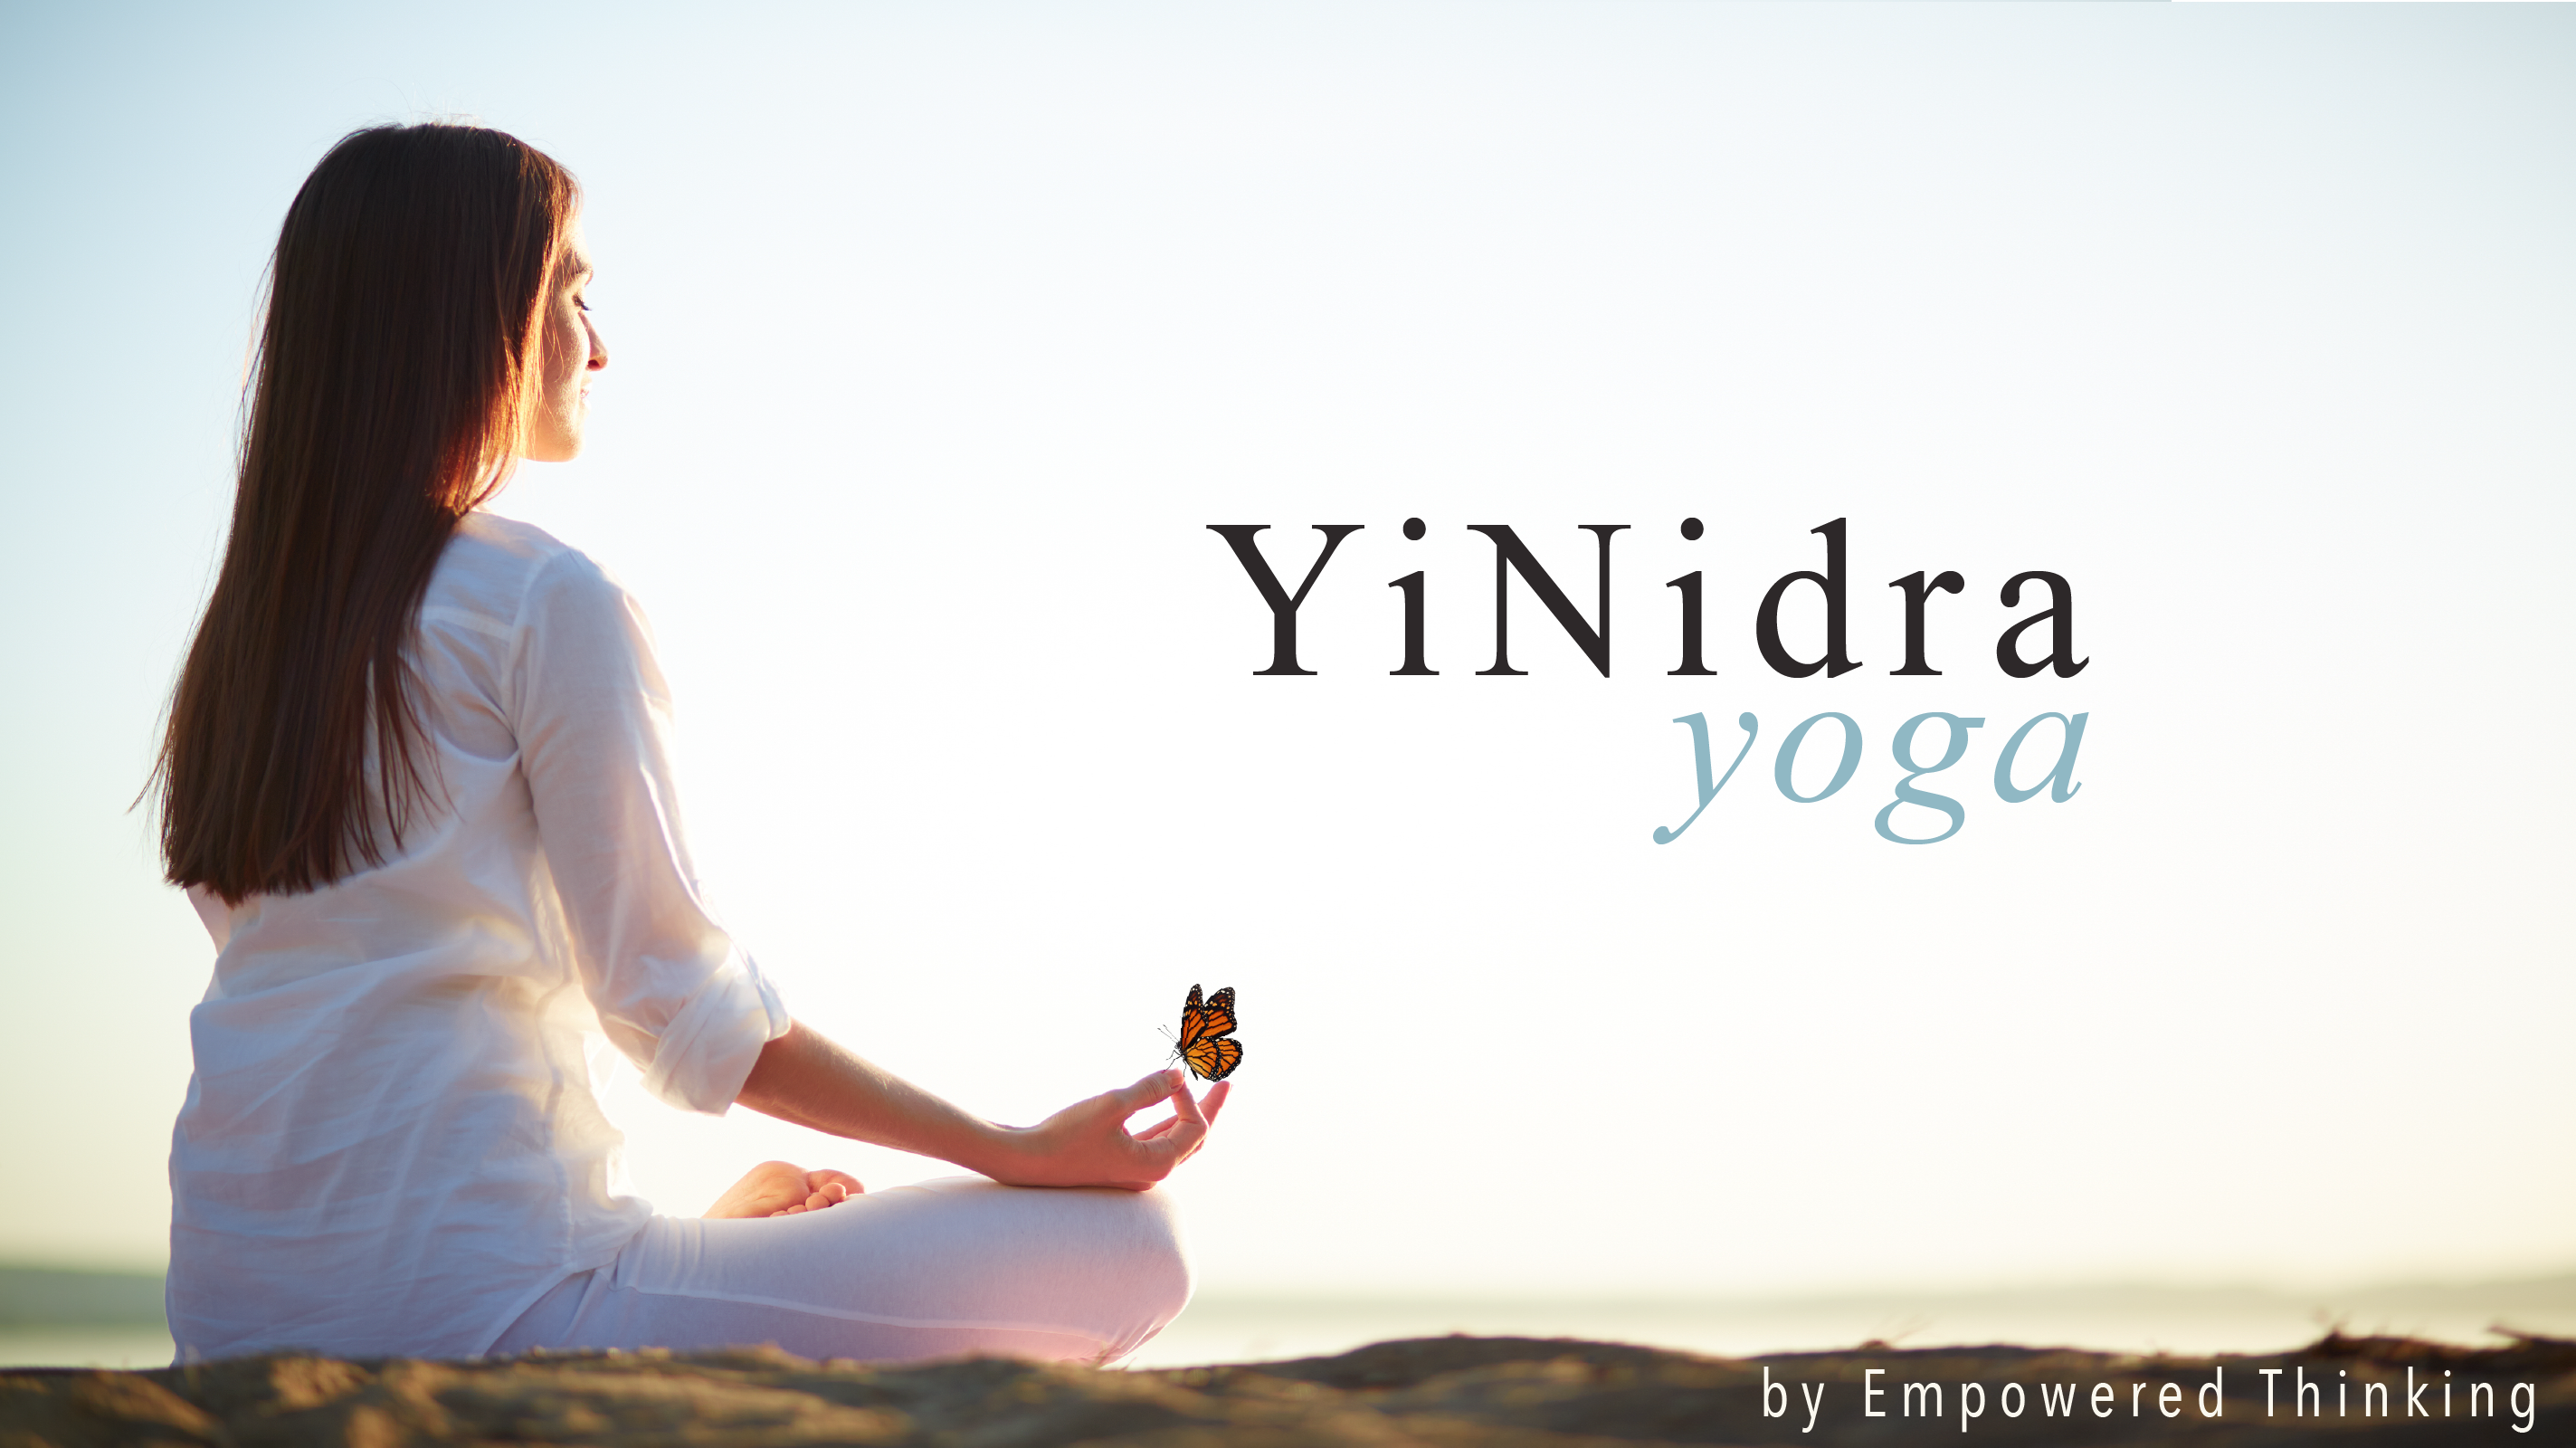 Yinidra Yoga by empowered thinking